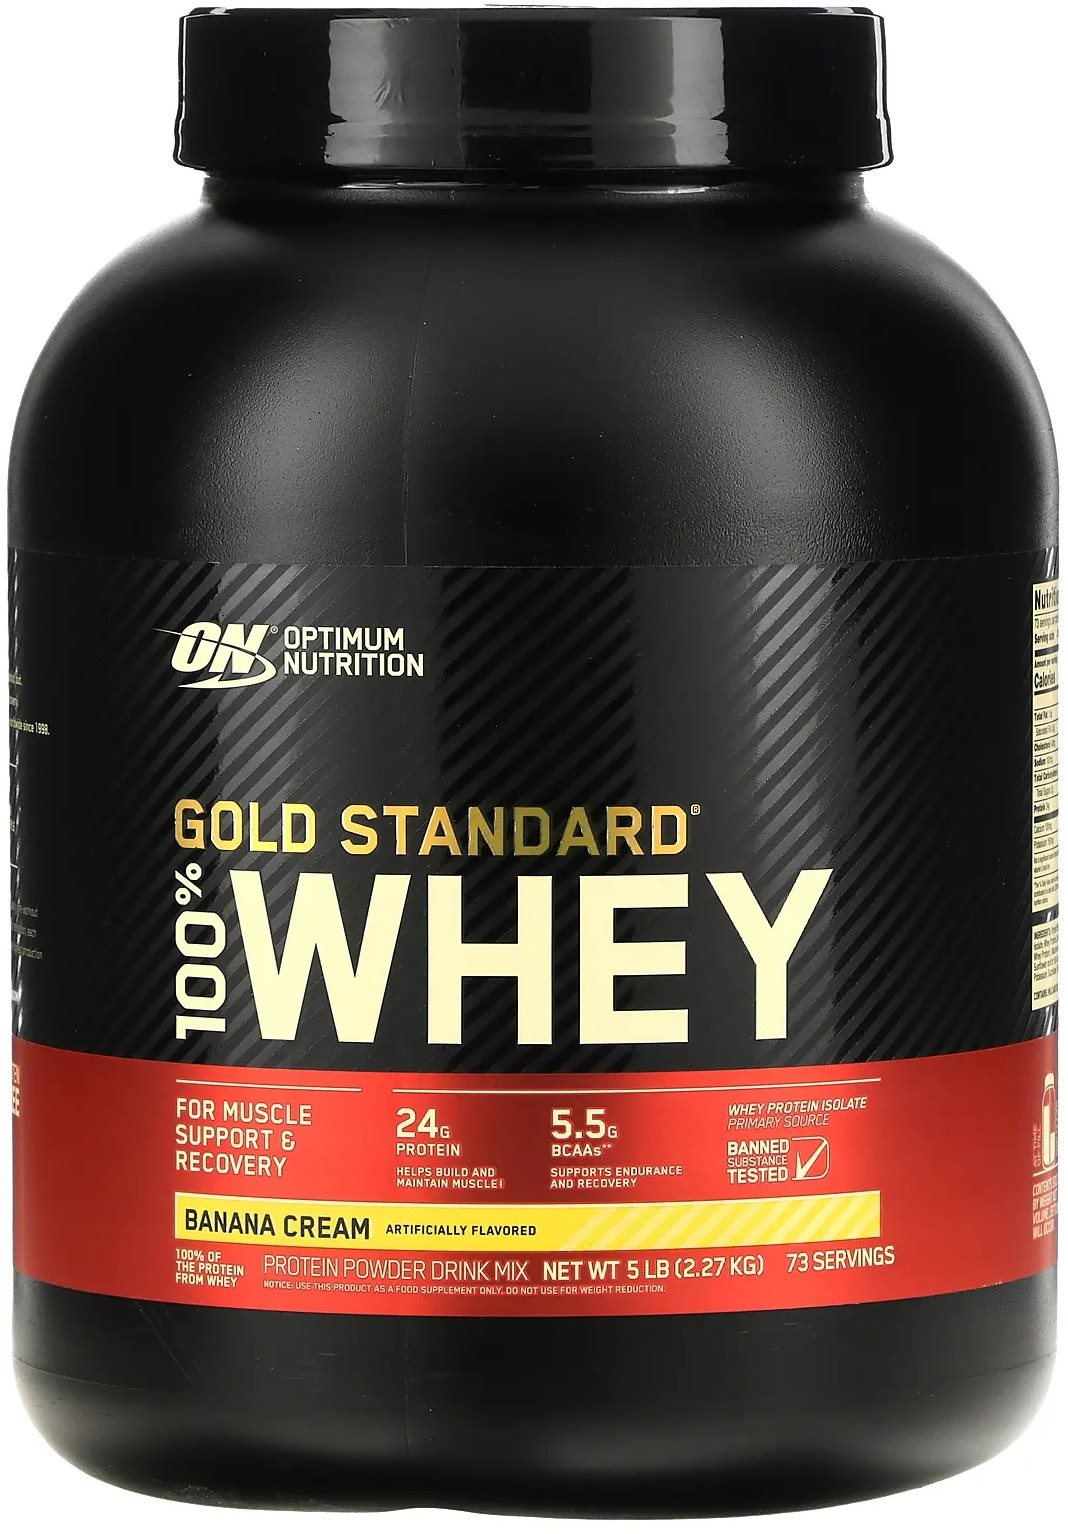 Protein Optimum Nutrition Protein 100% Whey Gold Standard 2267 g